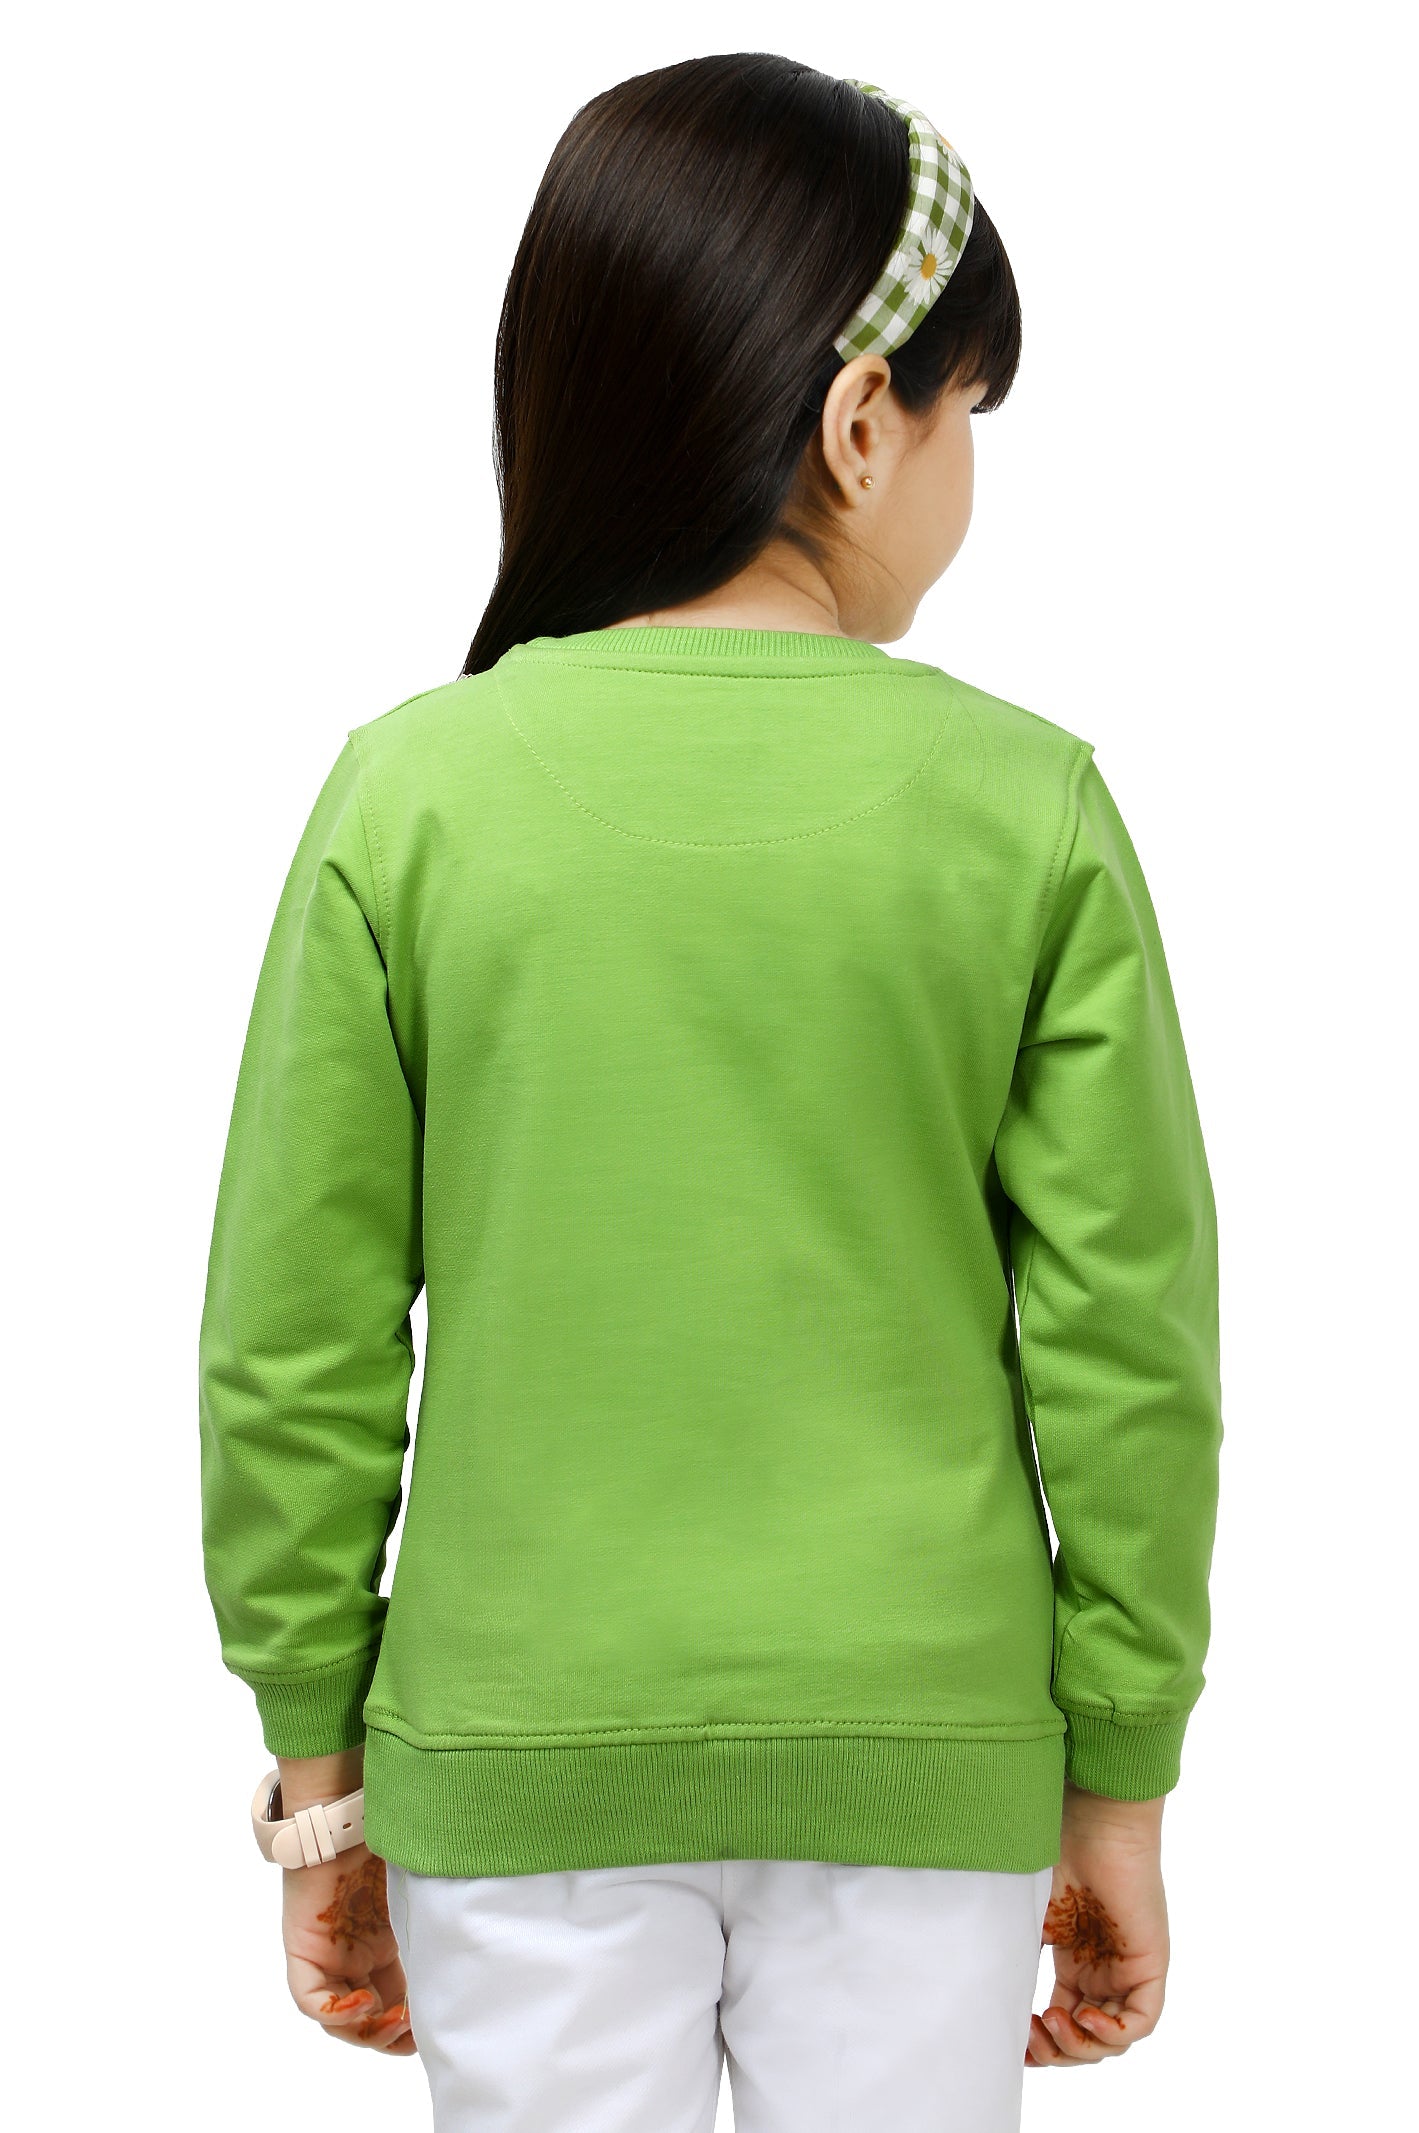 Girls Sweatshirt SKU: KGP-0012-GREEN - Diners